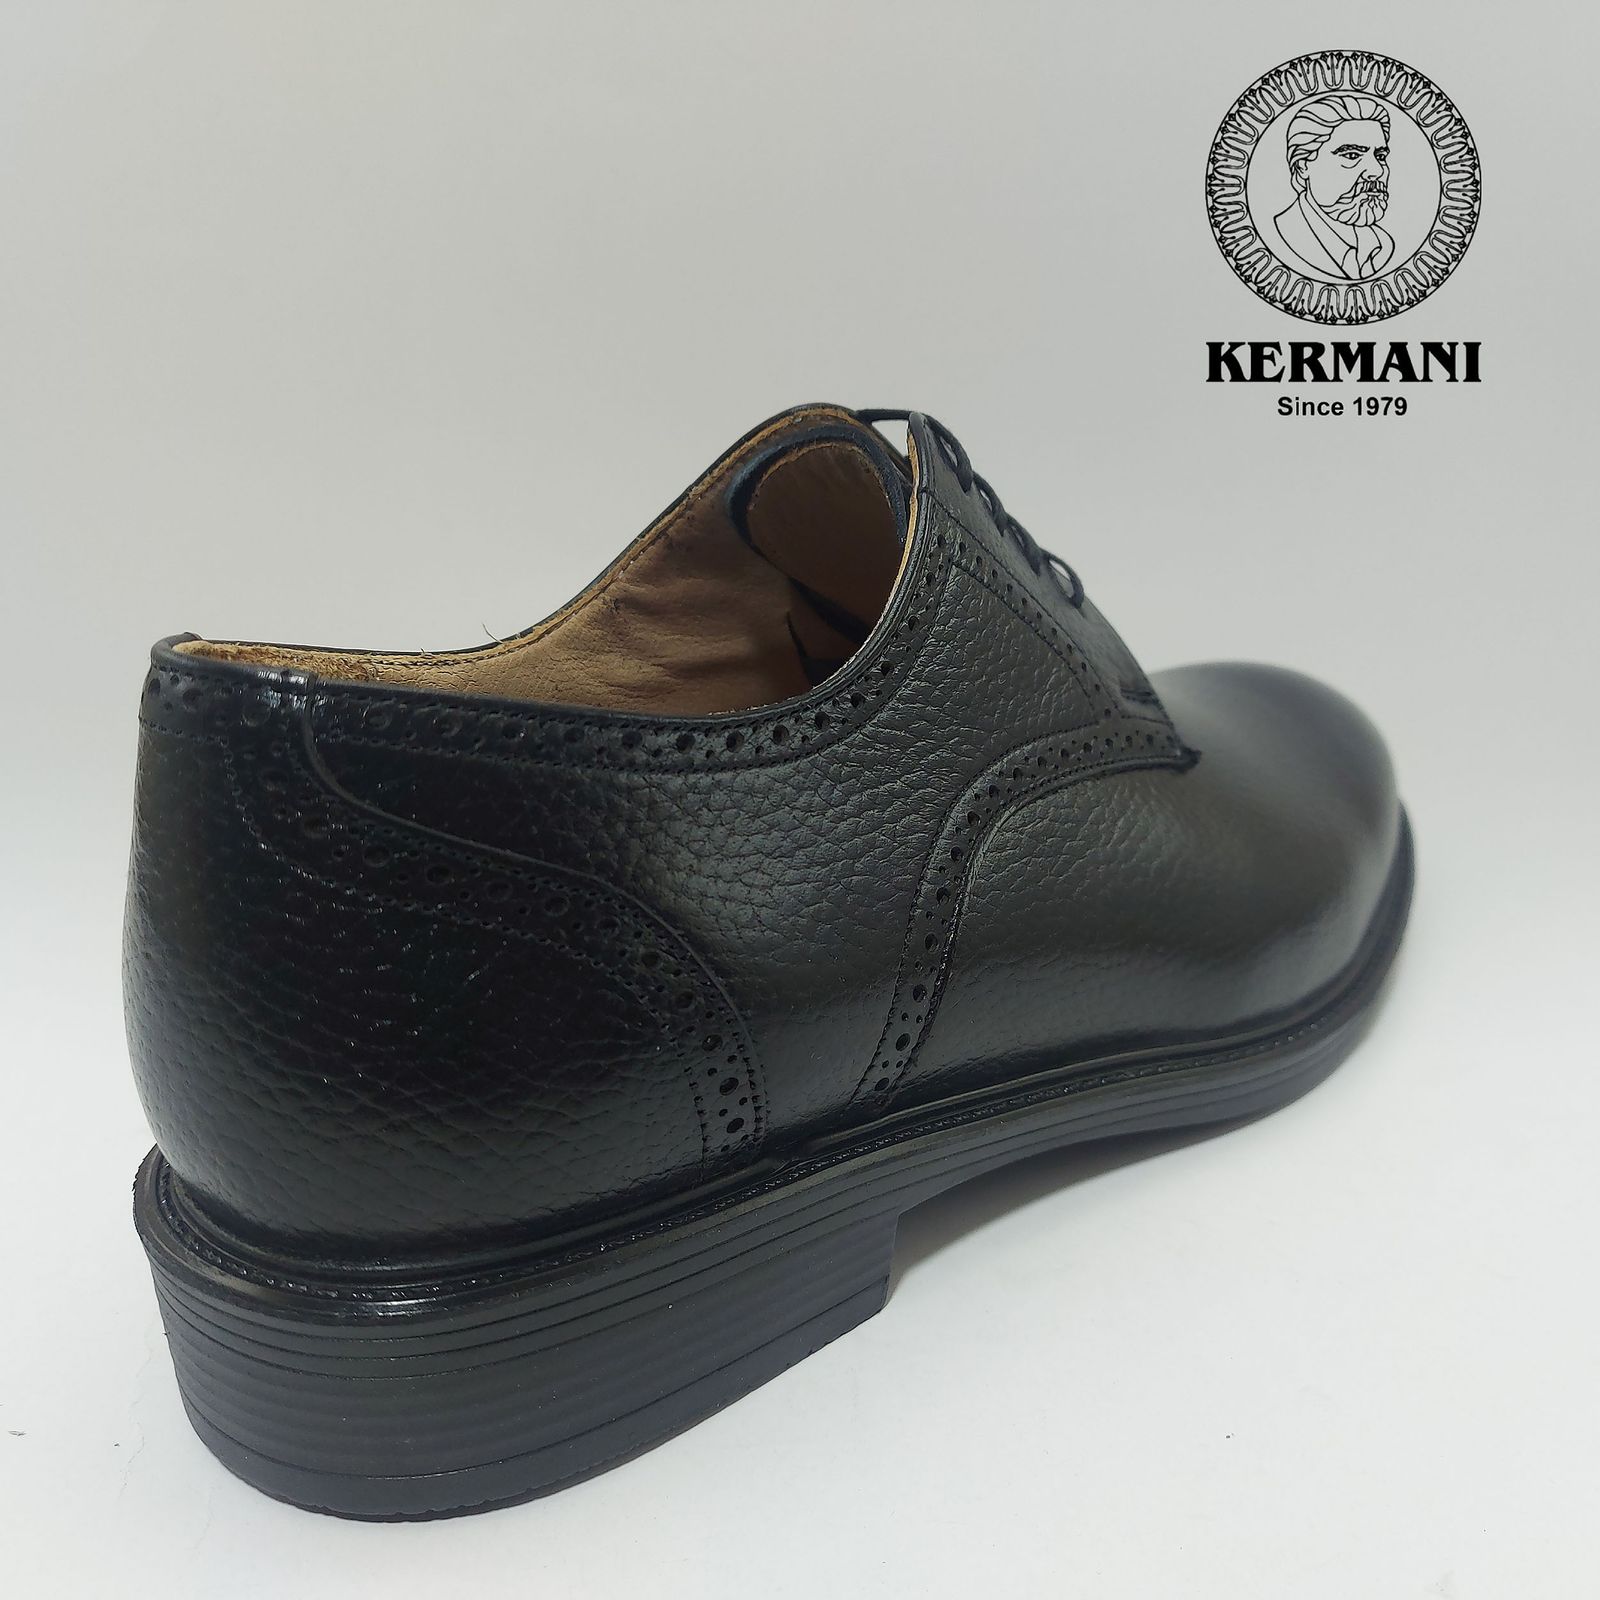 کفش مردانه کرمانی مدل چرم دستدوز طبیعی فلوتر کد 1062 رنگ مشکی -  - 3